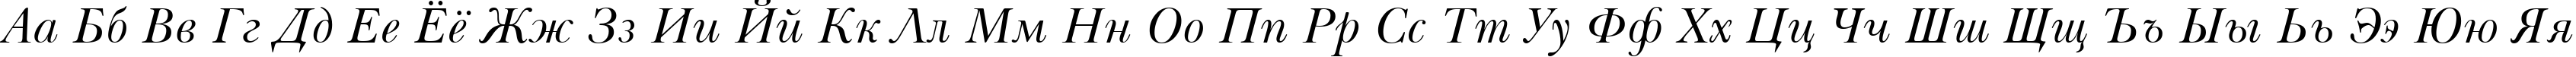 Пример написания русского алфавита шрифтом Baskerville Italic Win95BT